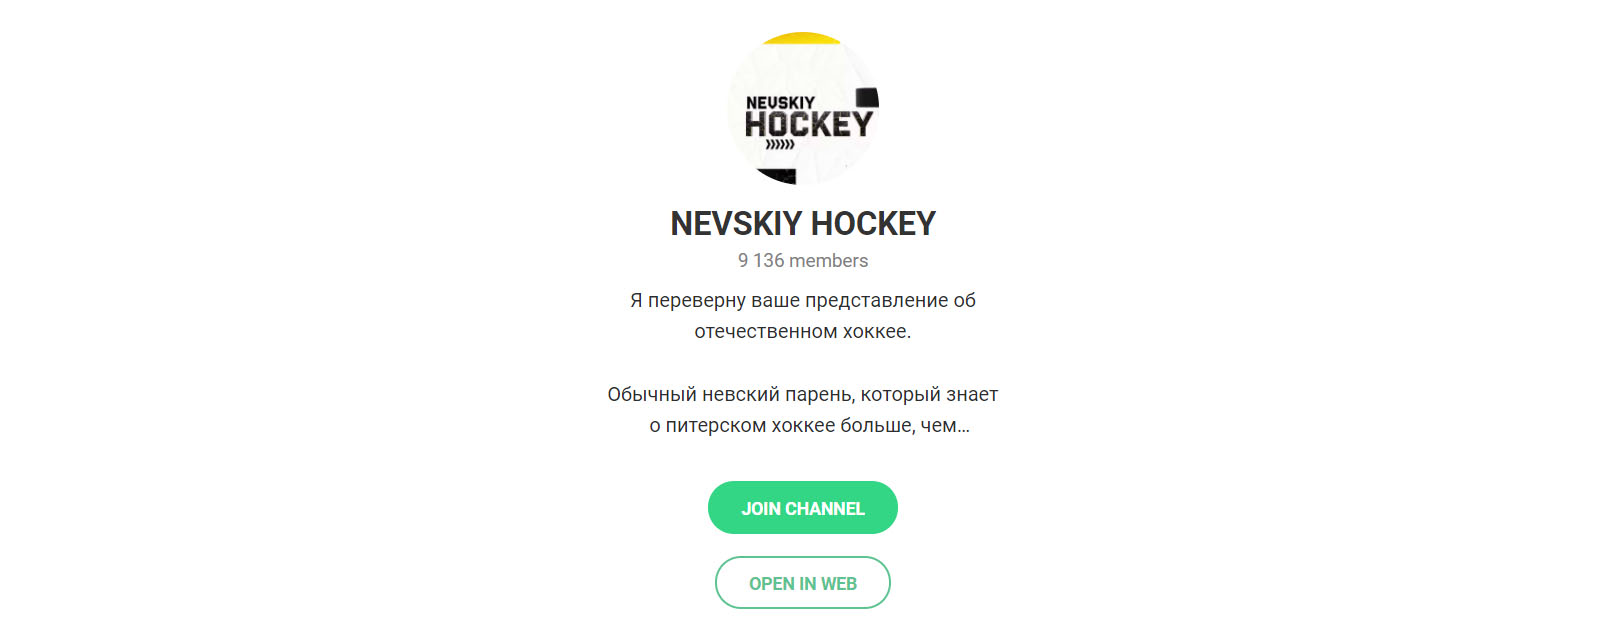 Внешний вид телеграм канала Nevskiy Hockey